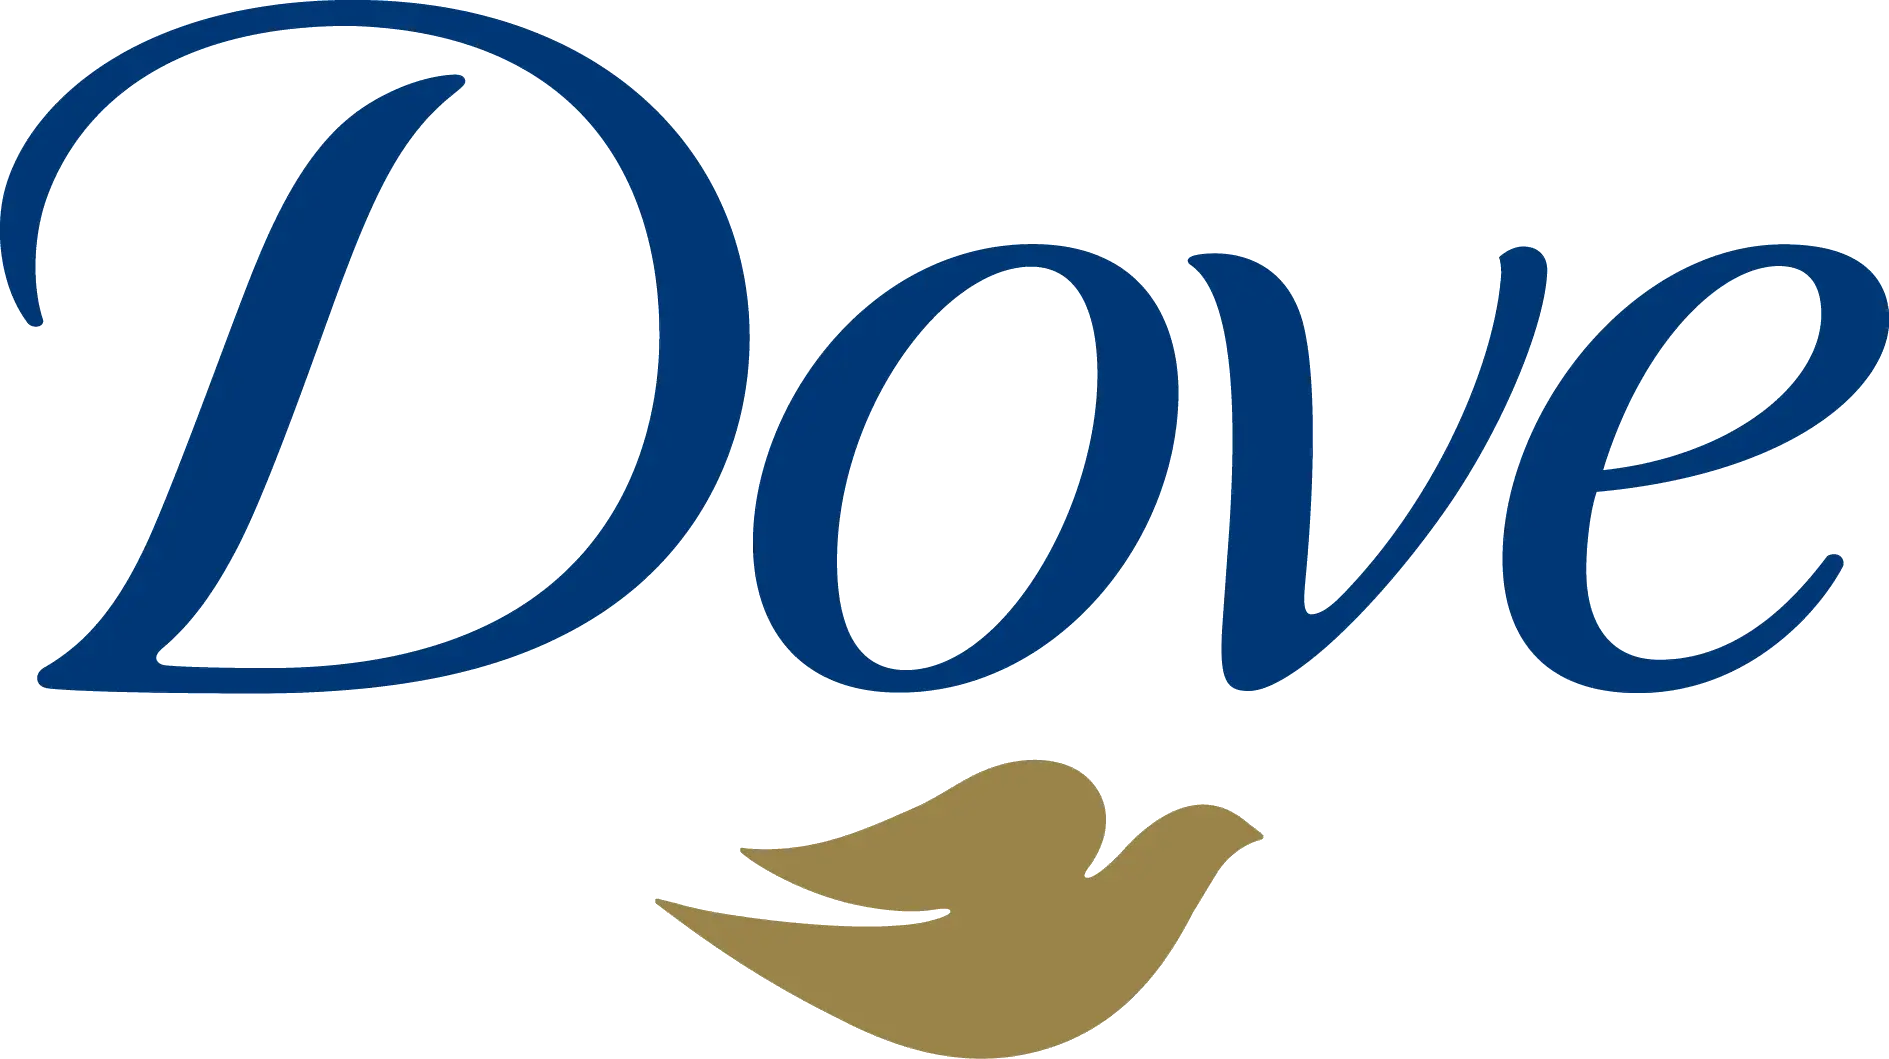 Firma Dove pionierem kampanii społecznych wokół ciałopozytywności